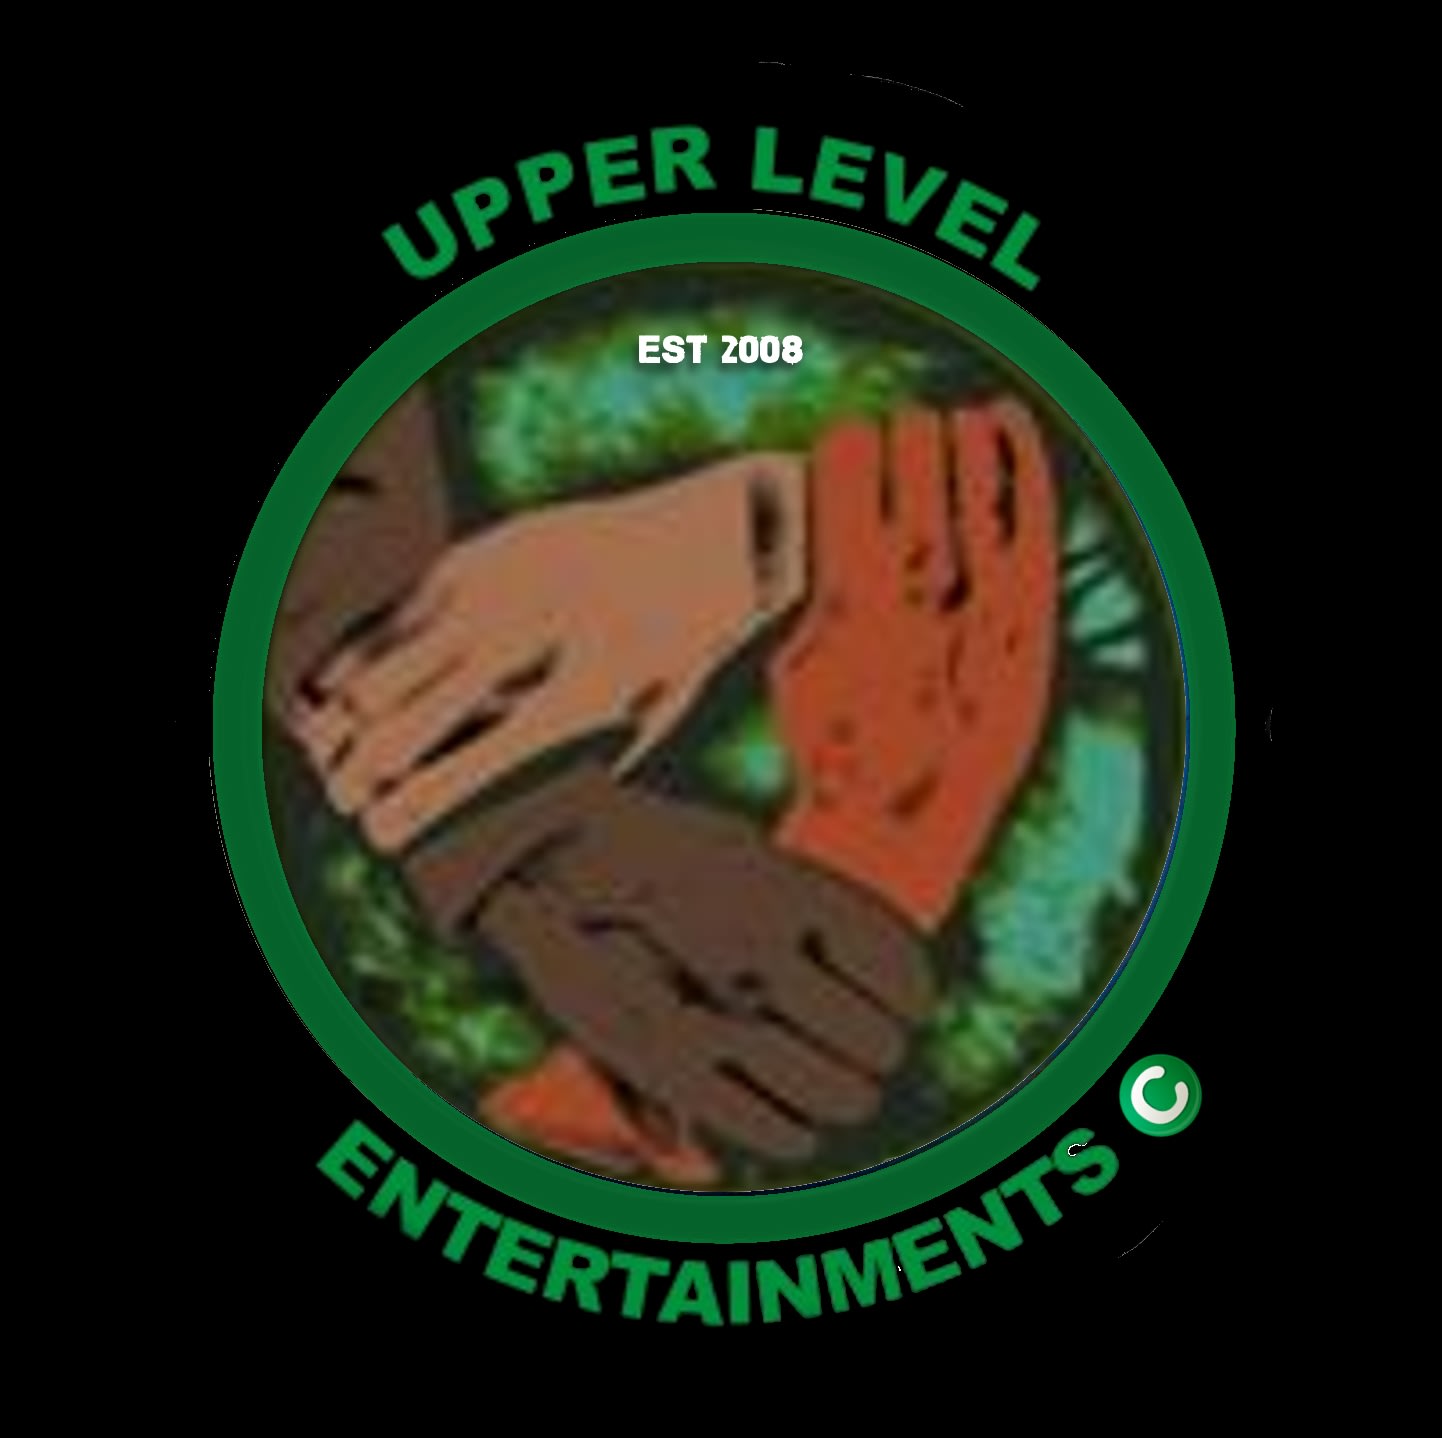 Upper Level Entertainment Ltd